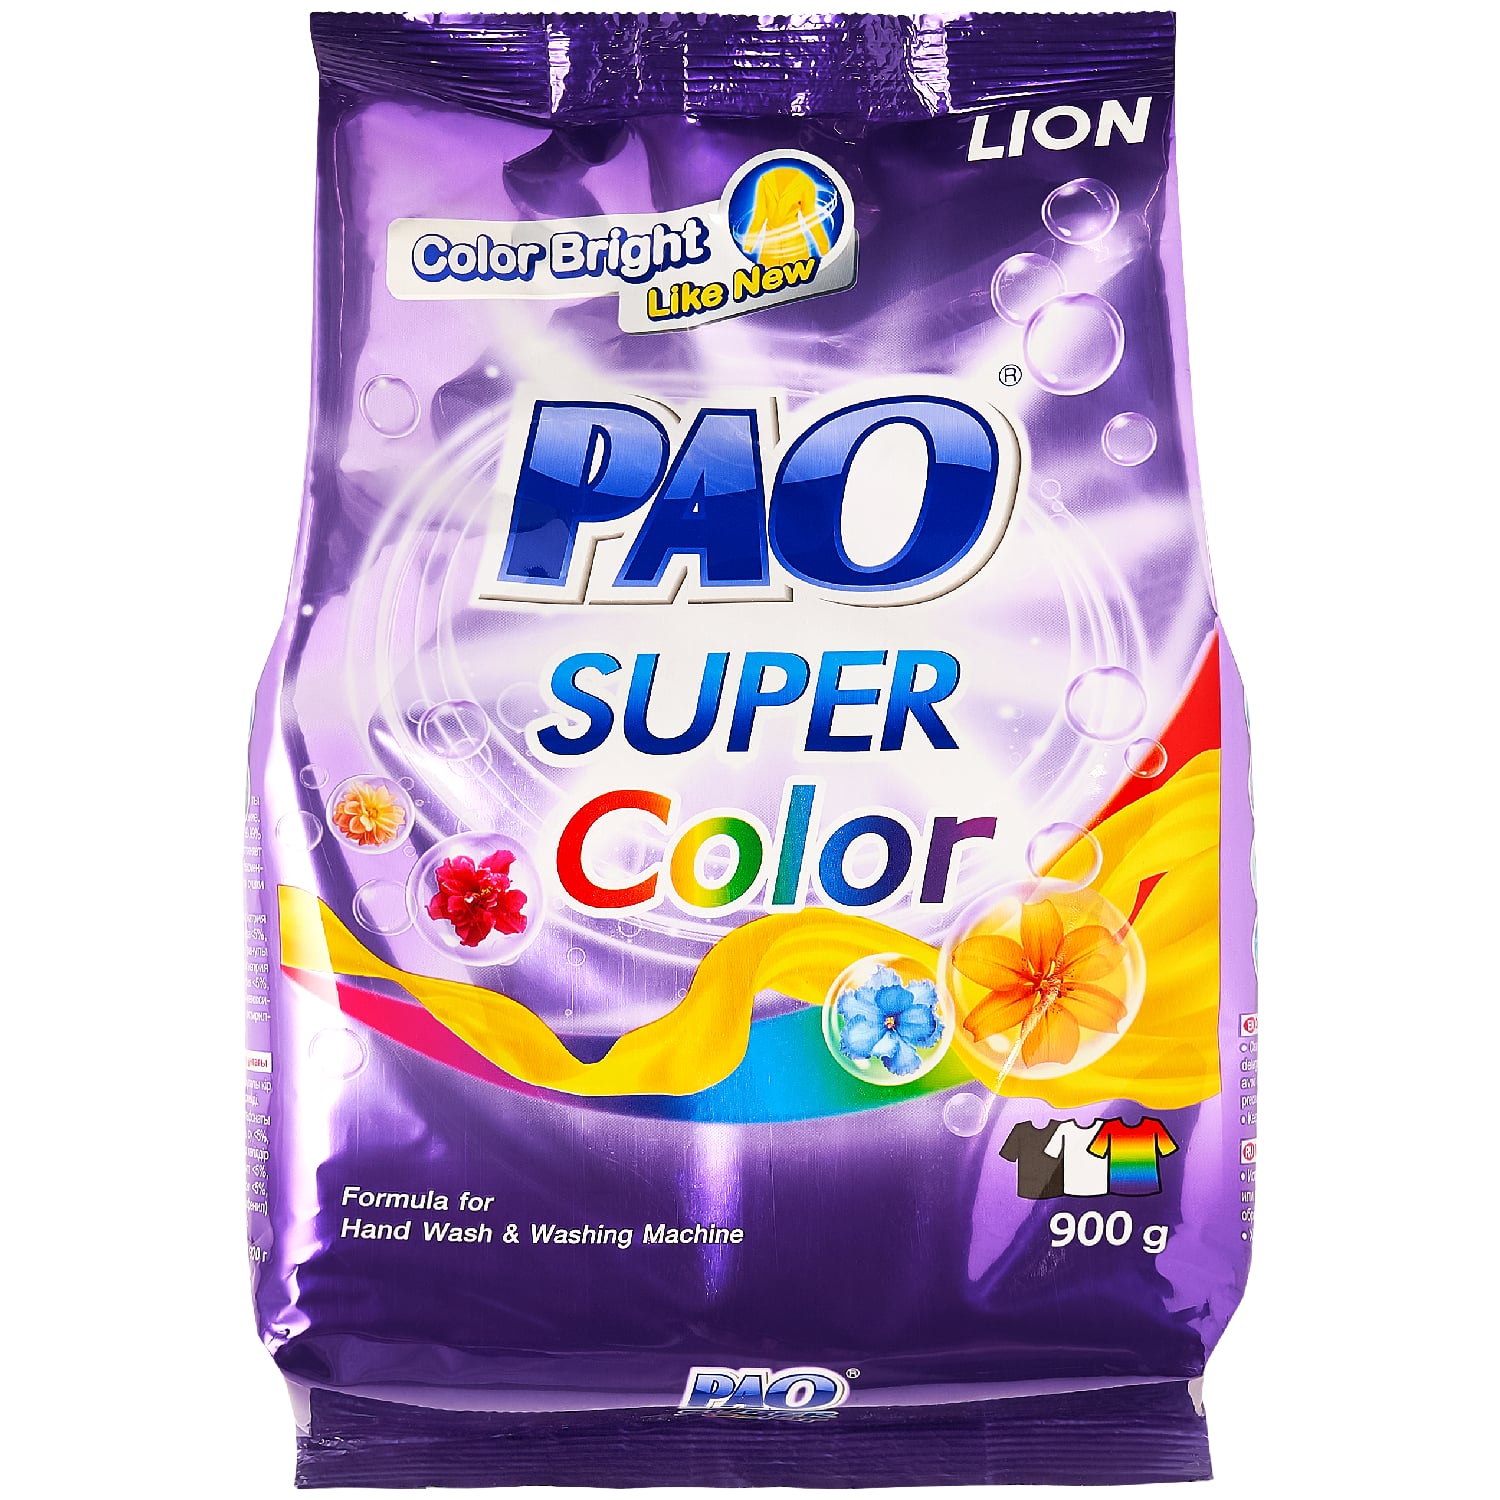 Lion Thailand Антибактериальный порошок Super Color для стирки цветного белья, 900 г (Lion Thailand, Pao) стиральный порошок lion pao super color 900 гр